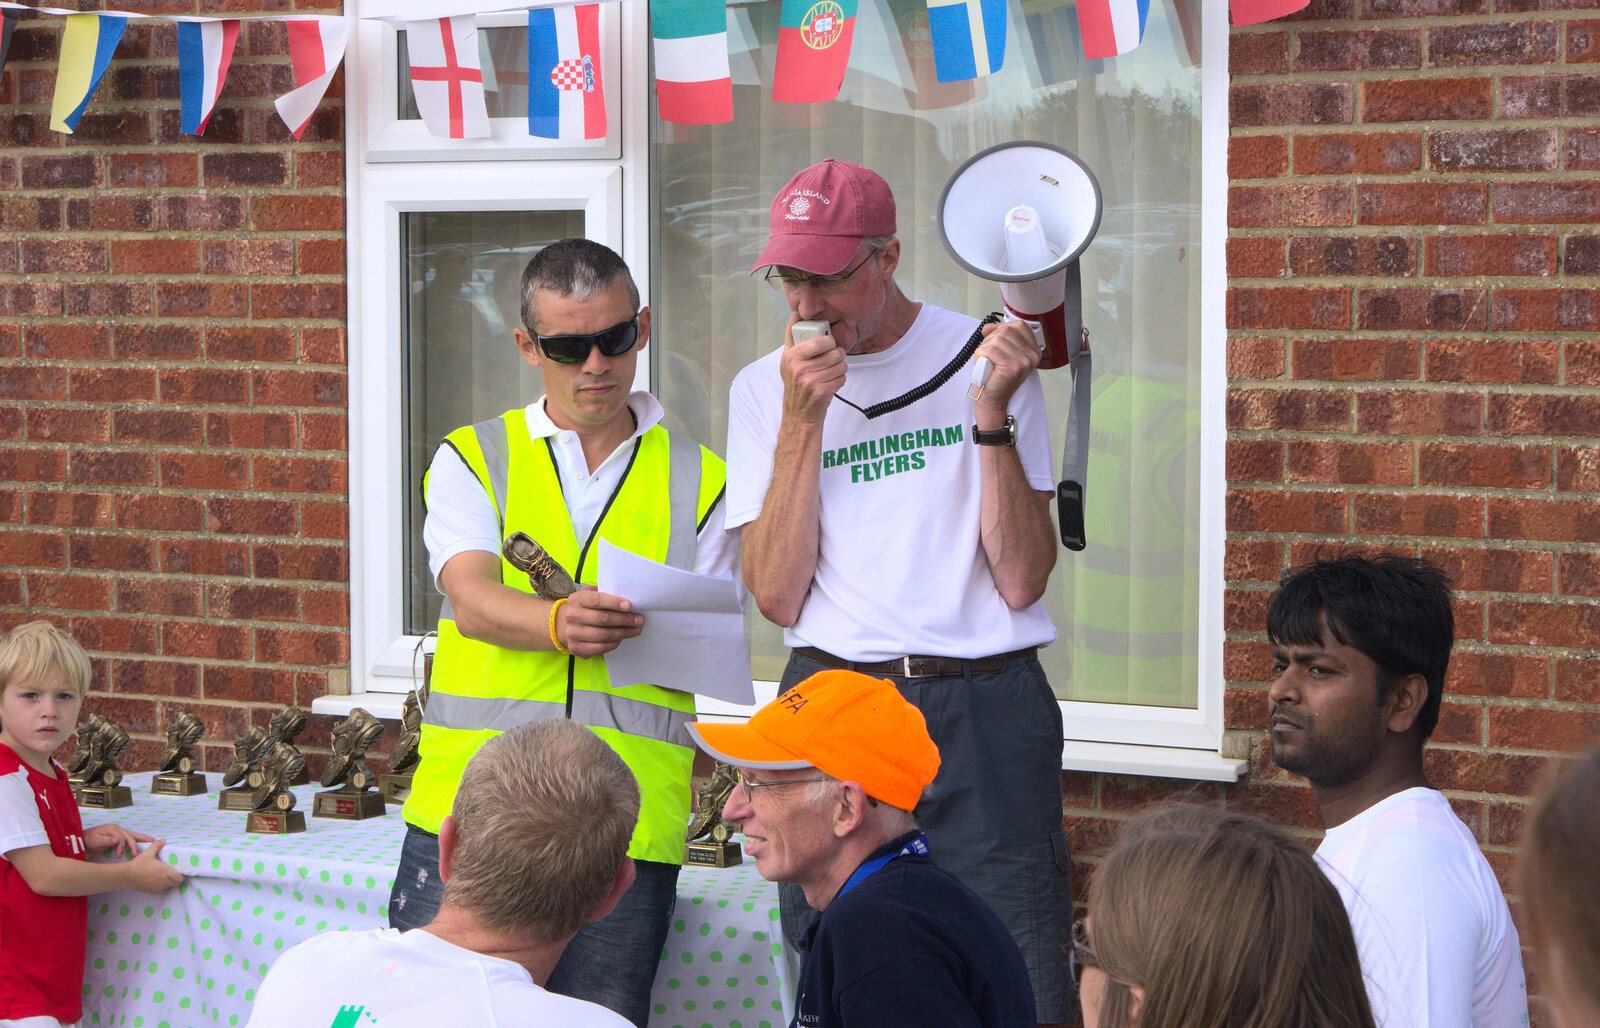 Framlingham Flyers announces the prizes from The Framlingham 10k Run, Suffolk - 31st August 2014